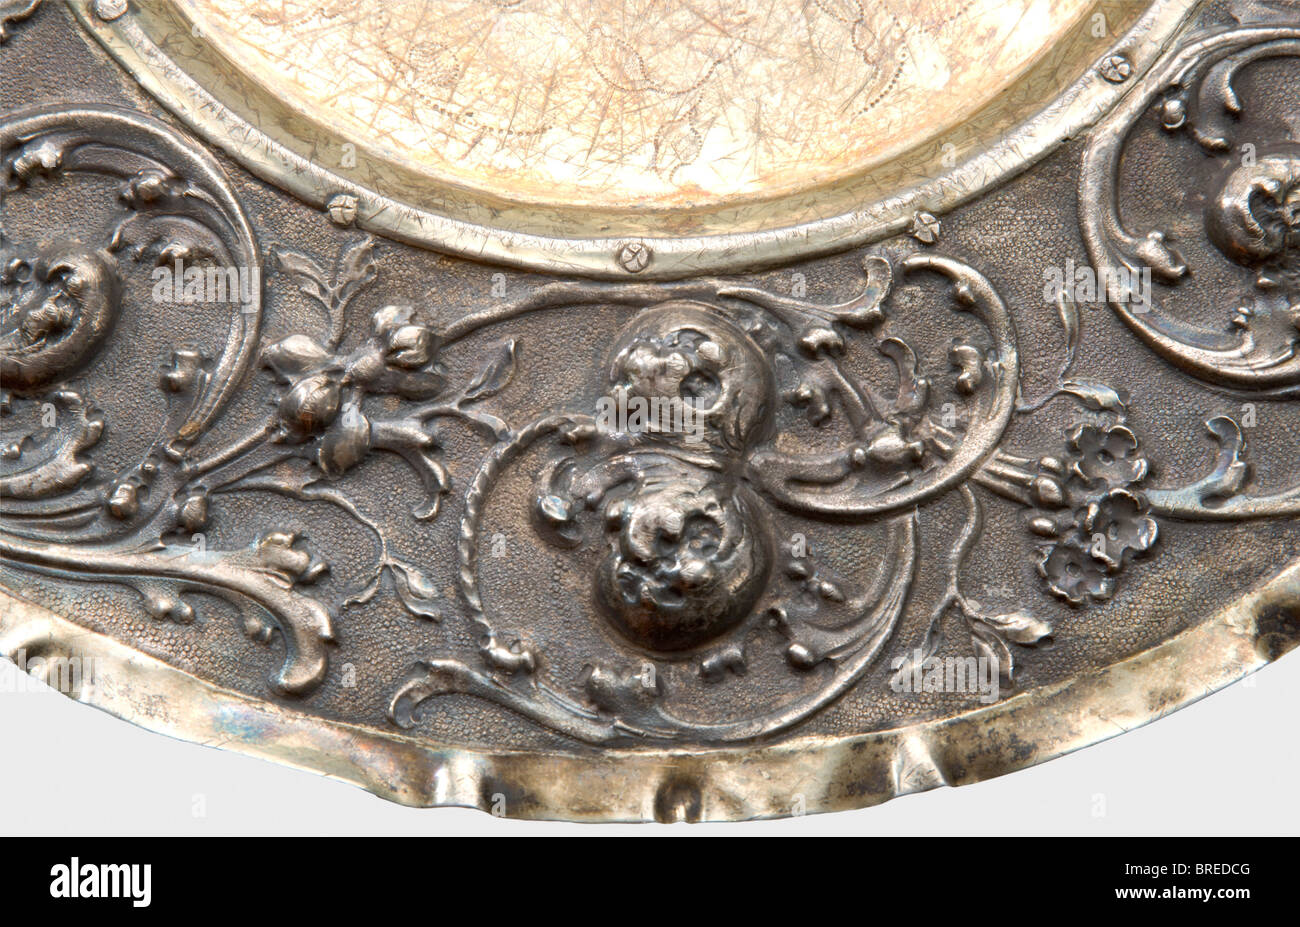 Une plaque d'affichage d'Augsbourg, Peter Rams, vers 1690 argent, partiellement doré, avec une décoration florale gravée en relief sur un fond pourchassé. Centre doré riveté. La marque principale, 'PR' et la marque de pin d'Augsbourg sont sur le côté. Diamètre 27,5 cm. Poids 287 g. Une ancienne étiquette d'inventaire cyrillique à peine lisible sur le fond 'No.135...' ainsi que les étiquettes d'inventaire 'ON' et 'H.V.W.' G.v.R.'. Probablement un cadeau familial à la Grande duchesse Olga de la collection d'art de Romanov. Provenance Grand Duchesse Olga Nikolaevna Romanova (1822 - 1892). Historique, Historique, Banque D'Images